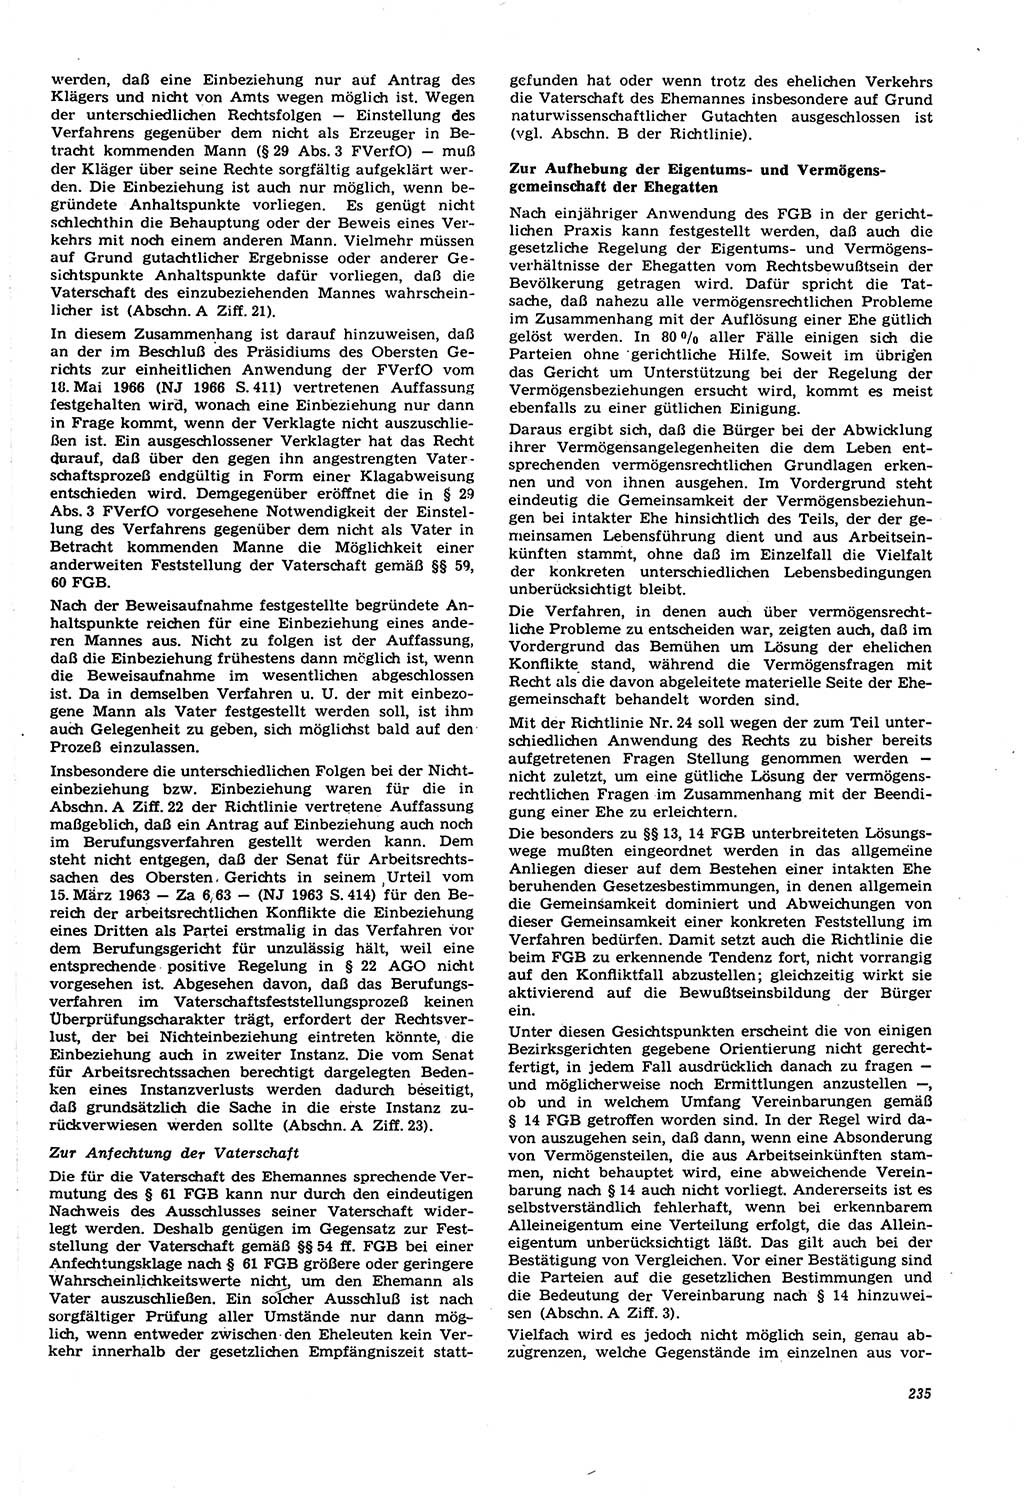 Neue Justiz (NJ), Zeitschrift für Recht und Rechtswissenschaft [Deutsche Demokratische Republik (DDR)], 21. Jahrgang 1967, Seite 235 (NJ DDR 1967, S. 235)